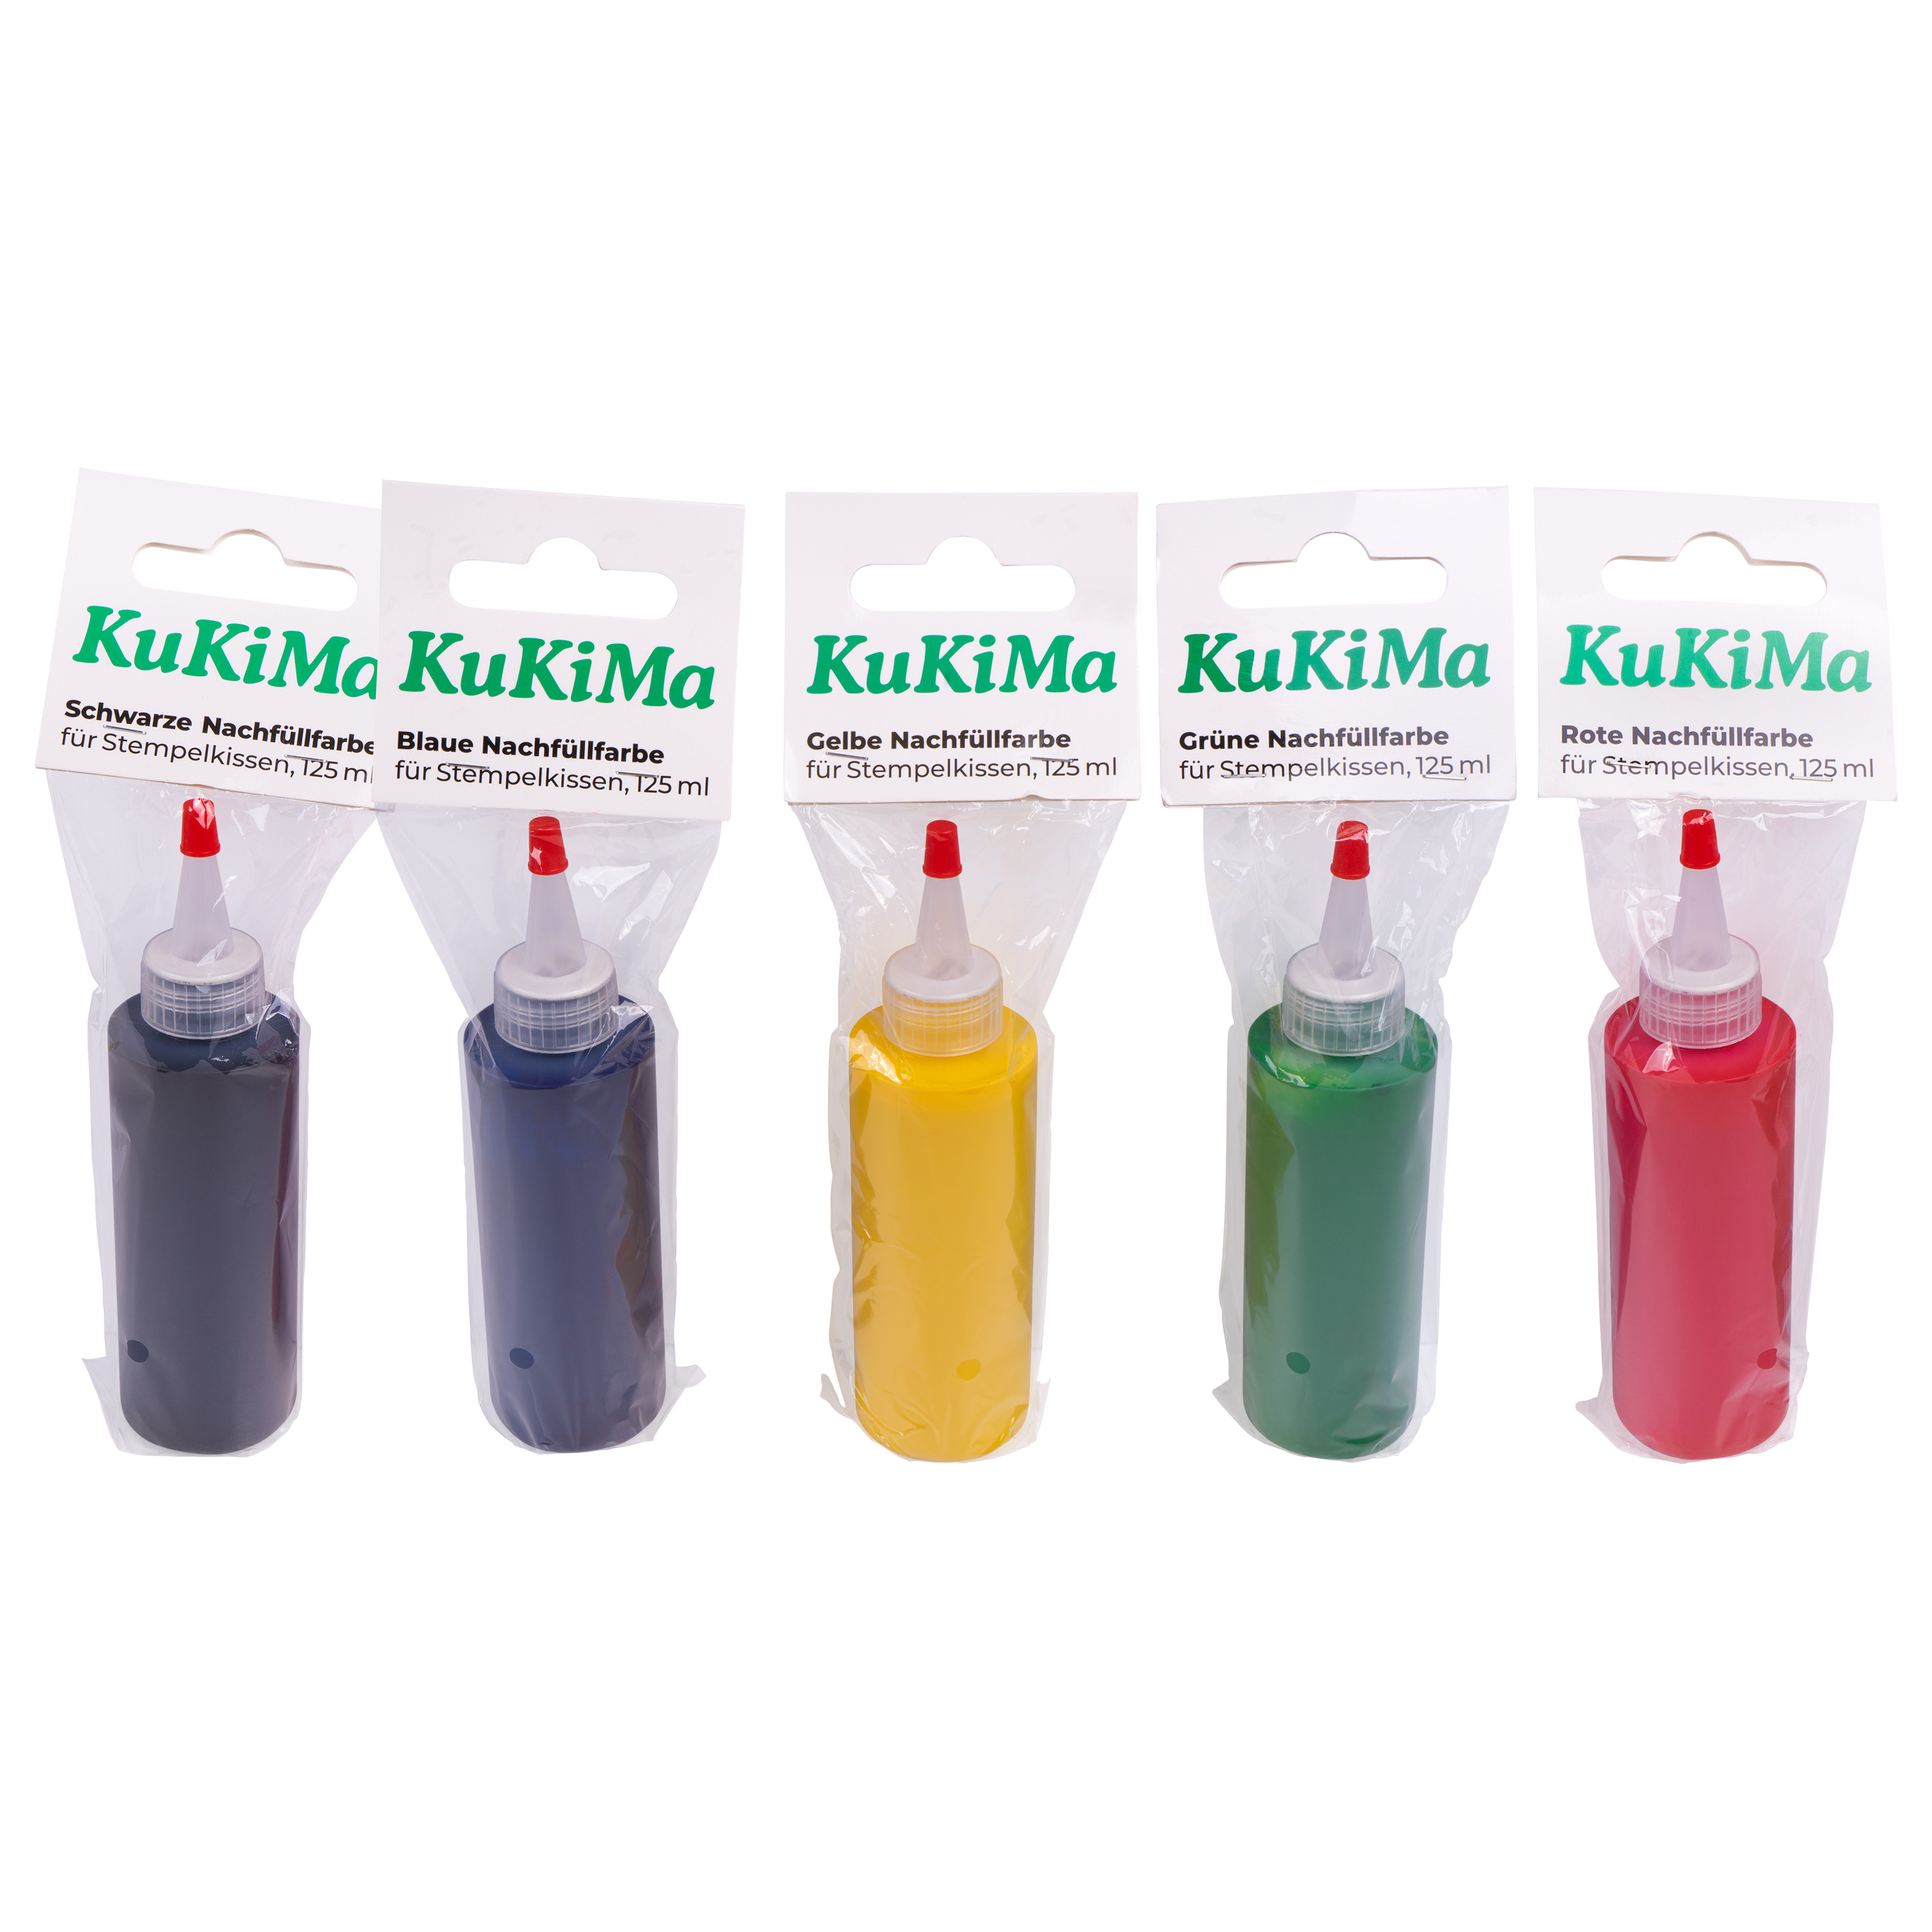 KuKiMa Blaue Nachfüllfarbe für Stempelkissen, 125 ml